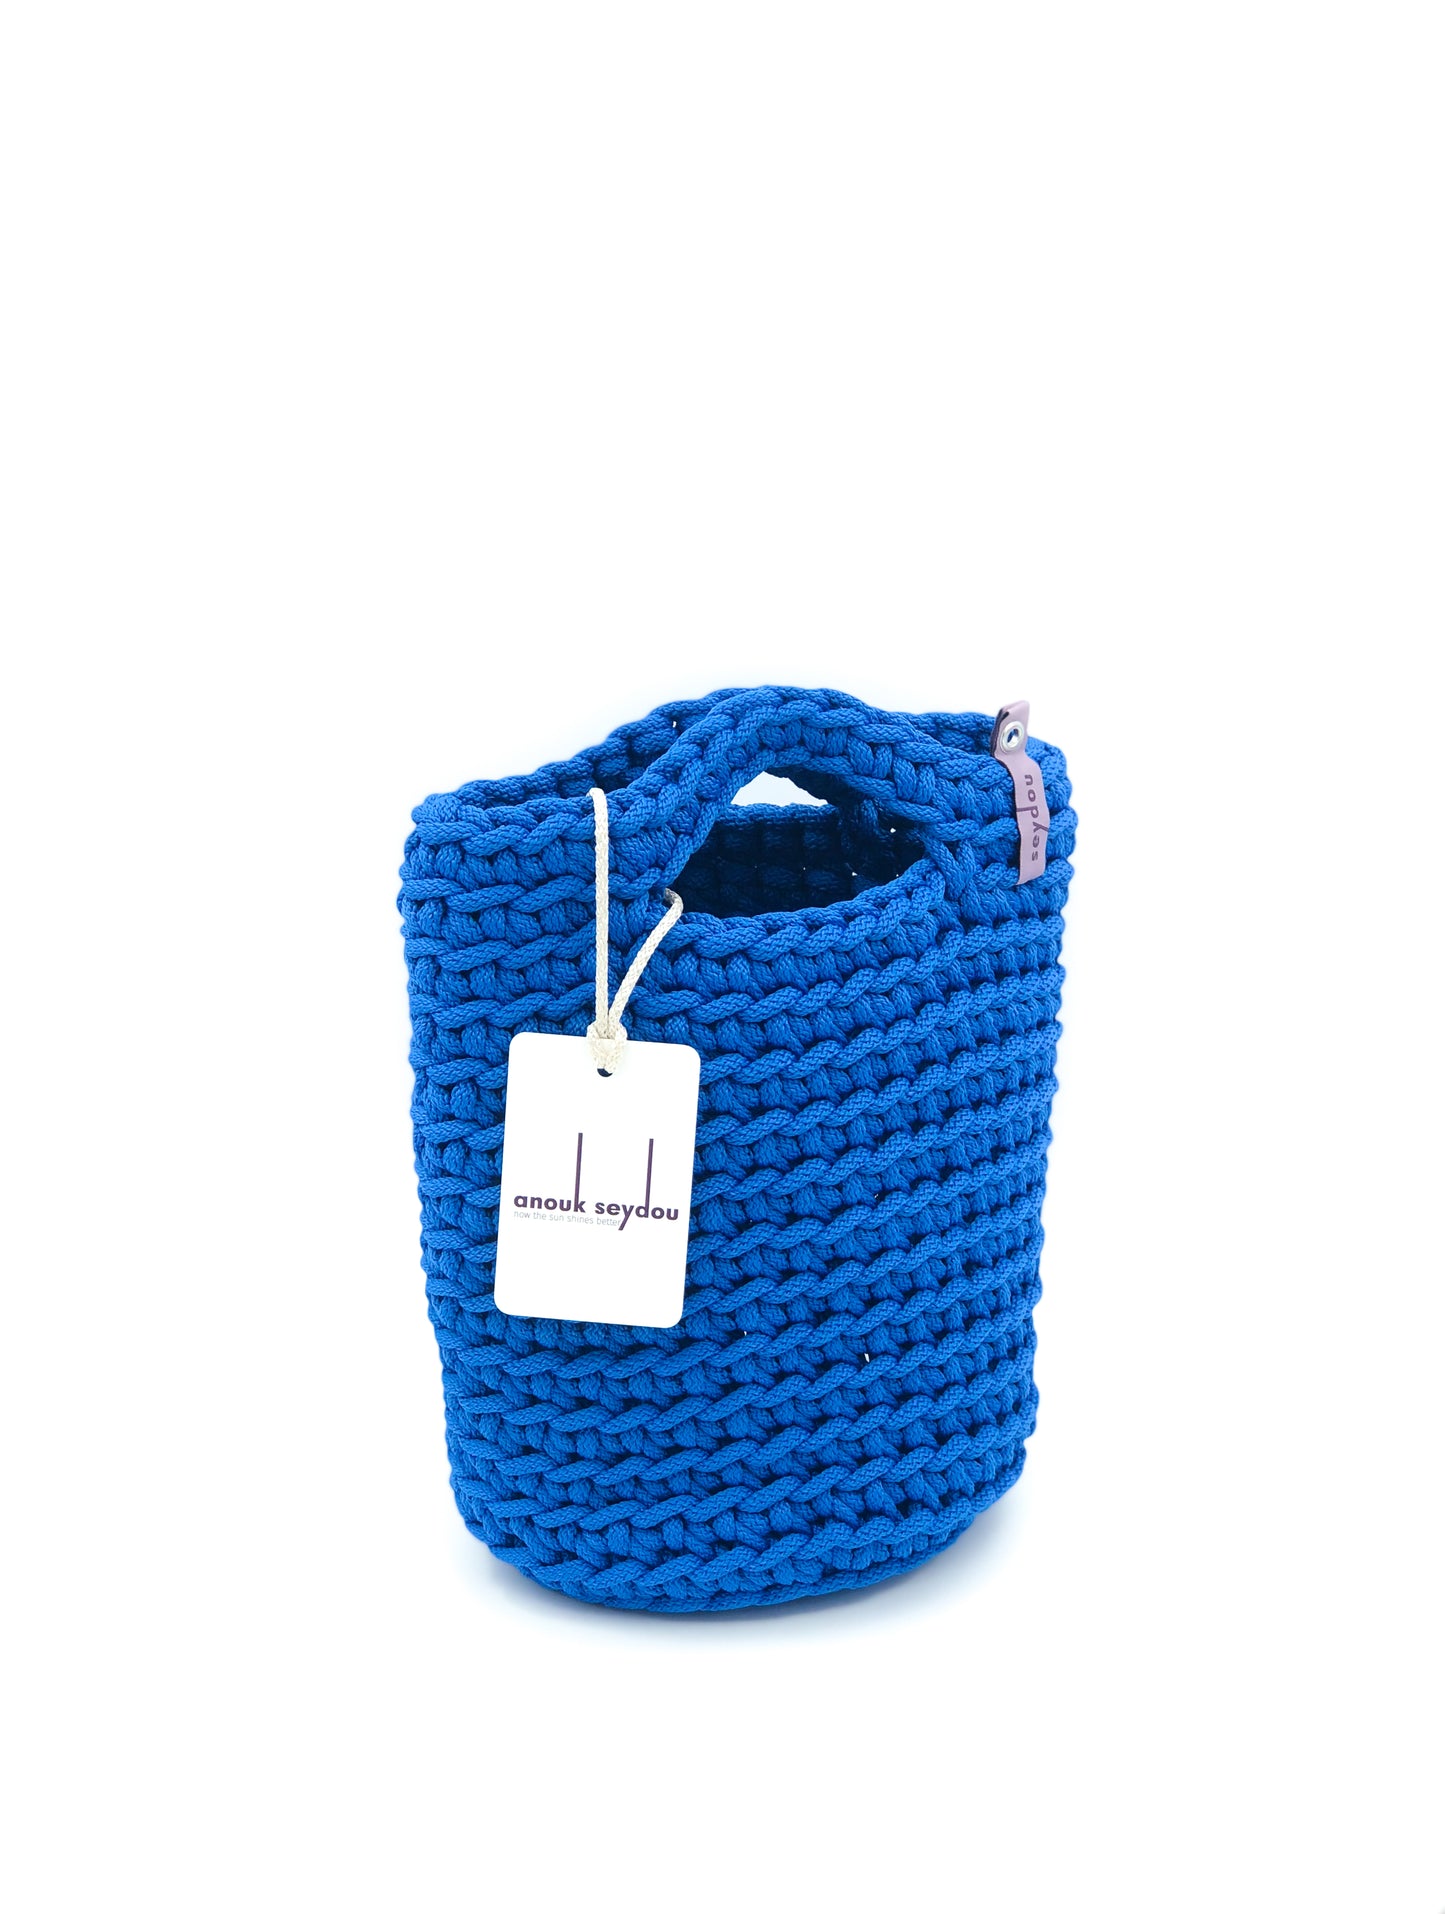 Tote Bag Scandinavian Style Ocean Blue Crochet Size MINI